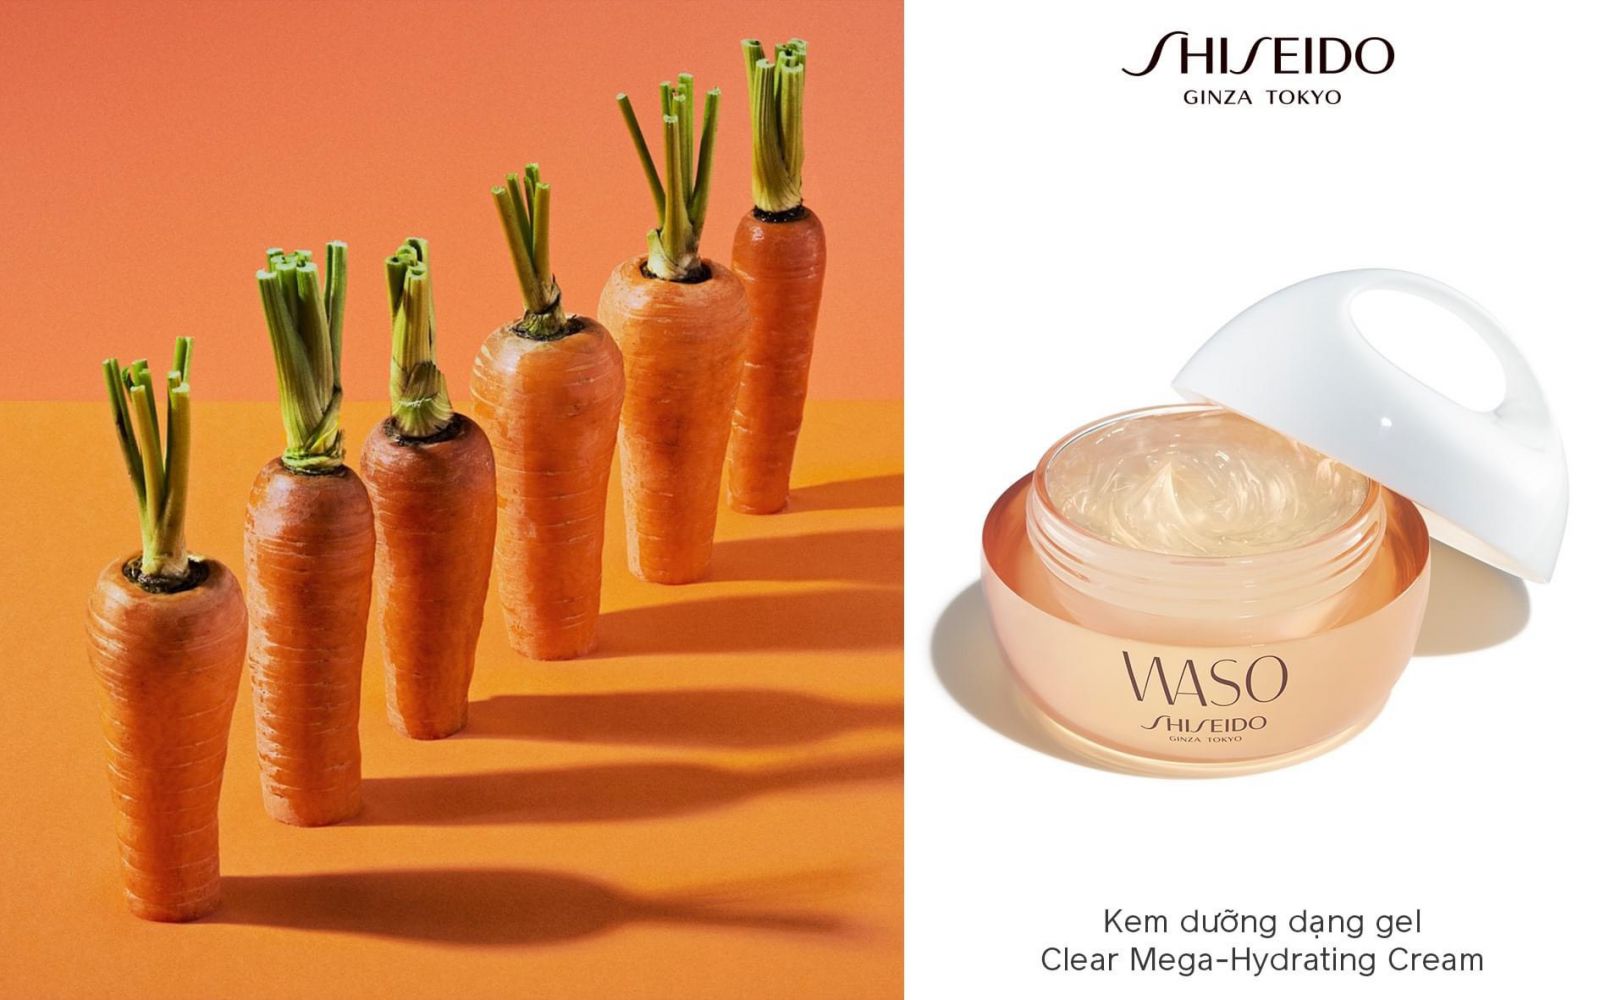 Shiseido Waso Color-Smart Day Moisturizer kích thích sản xuất collagen cho da, từ đó duy trì tính đàn hồi của da